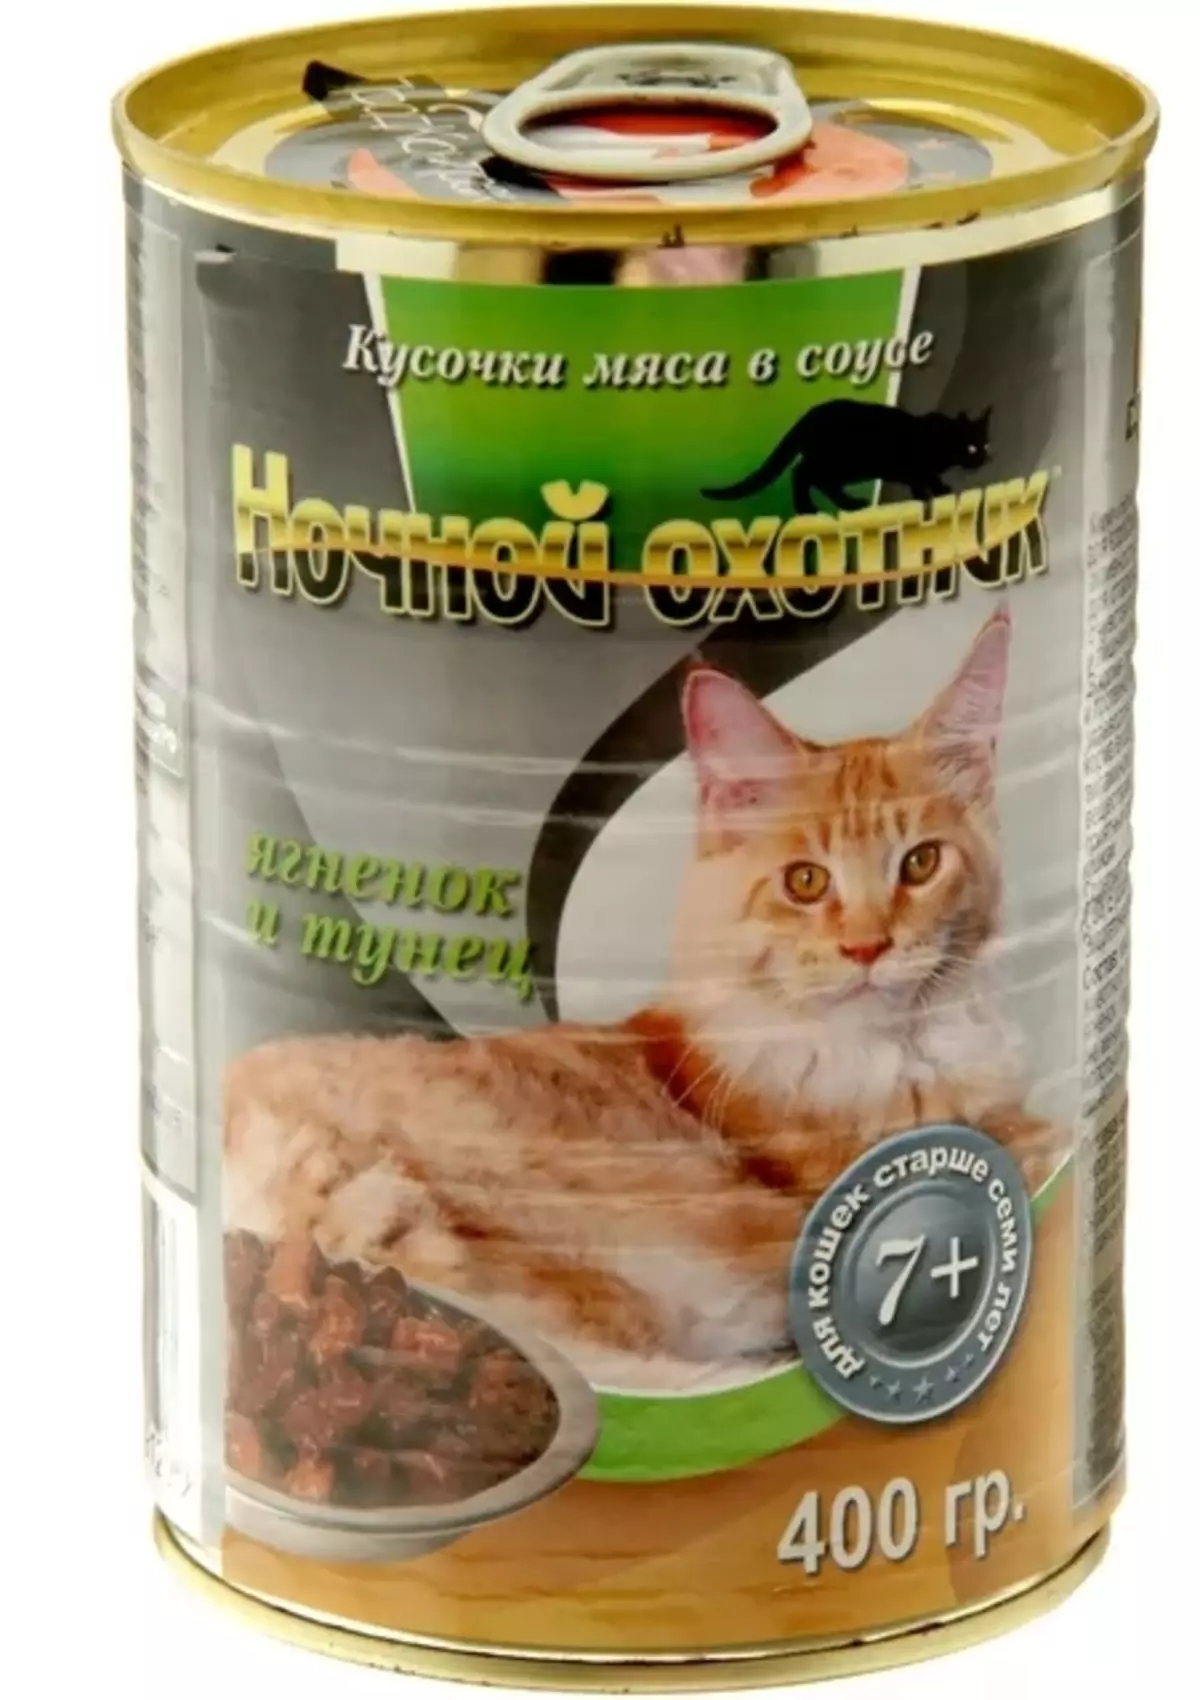 Կատուների կերակրումը «Գիշերային որսորդ». Կազմը: Սնունդ kittens եւ ստերիլիզացված կատուների, չոր եւ խոնավ կուտակային սննդի արտադրողի համար: Վերանայման ակնարկներ 22008_25